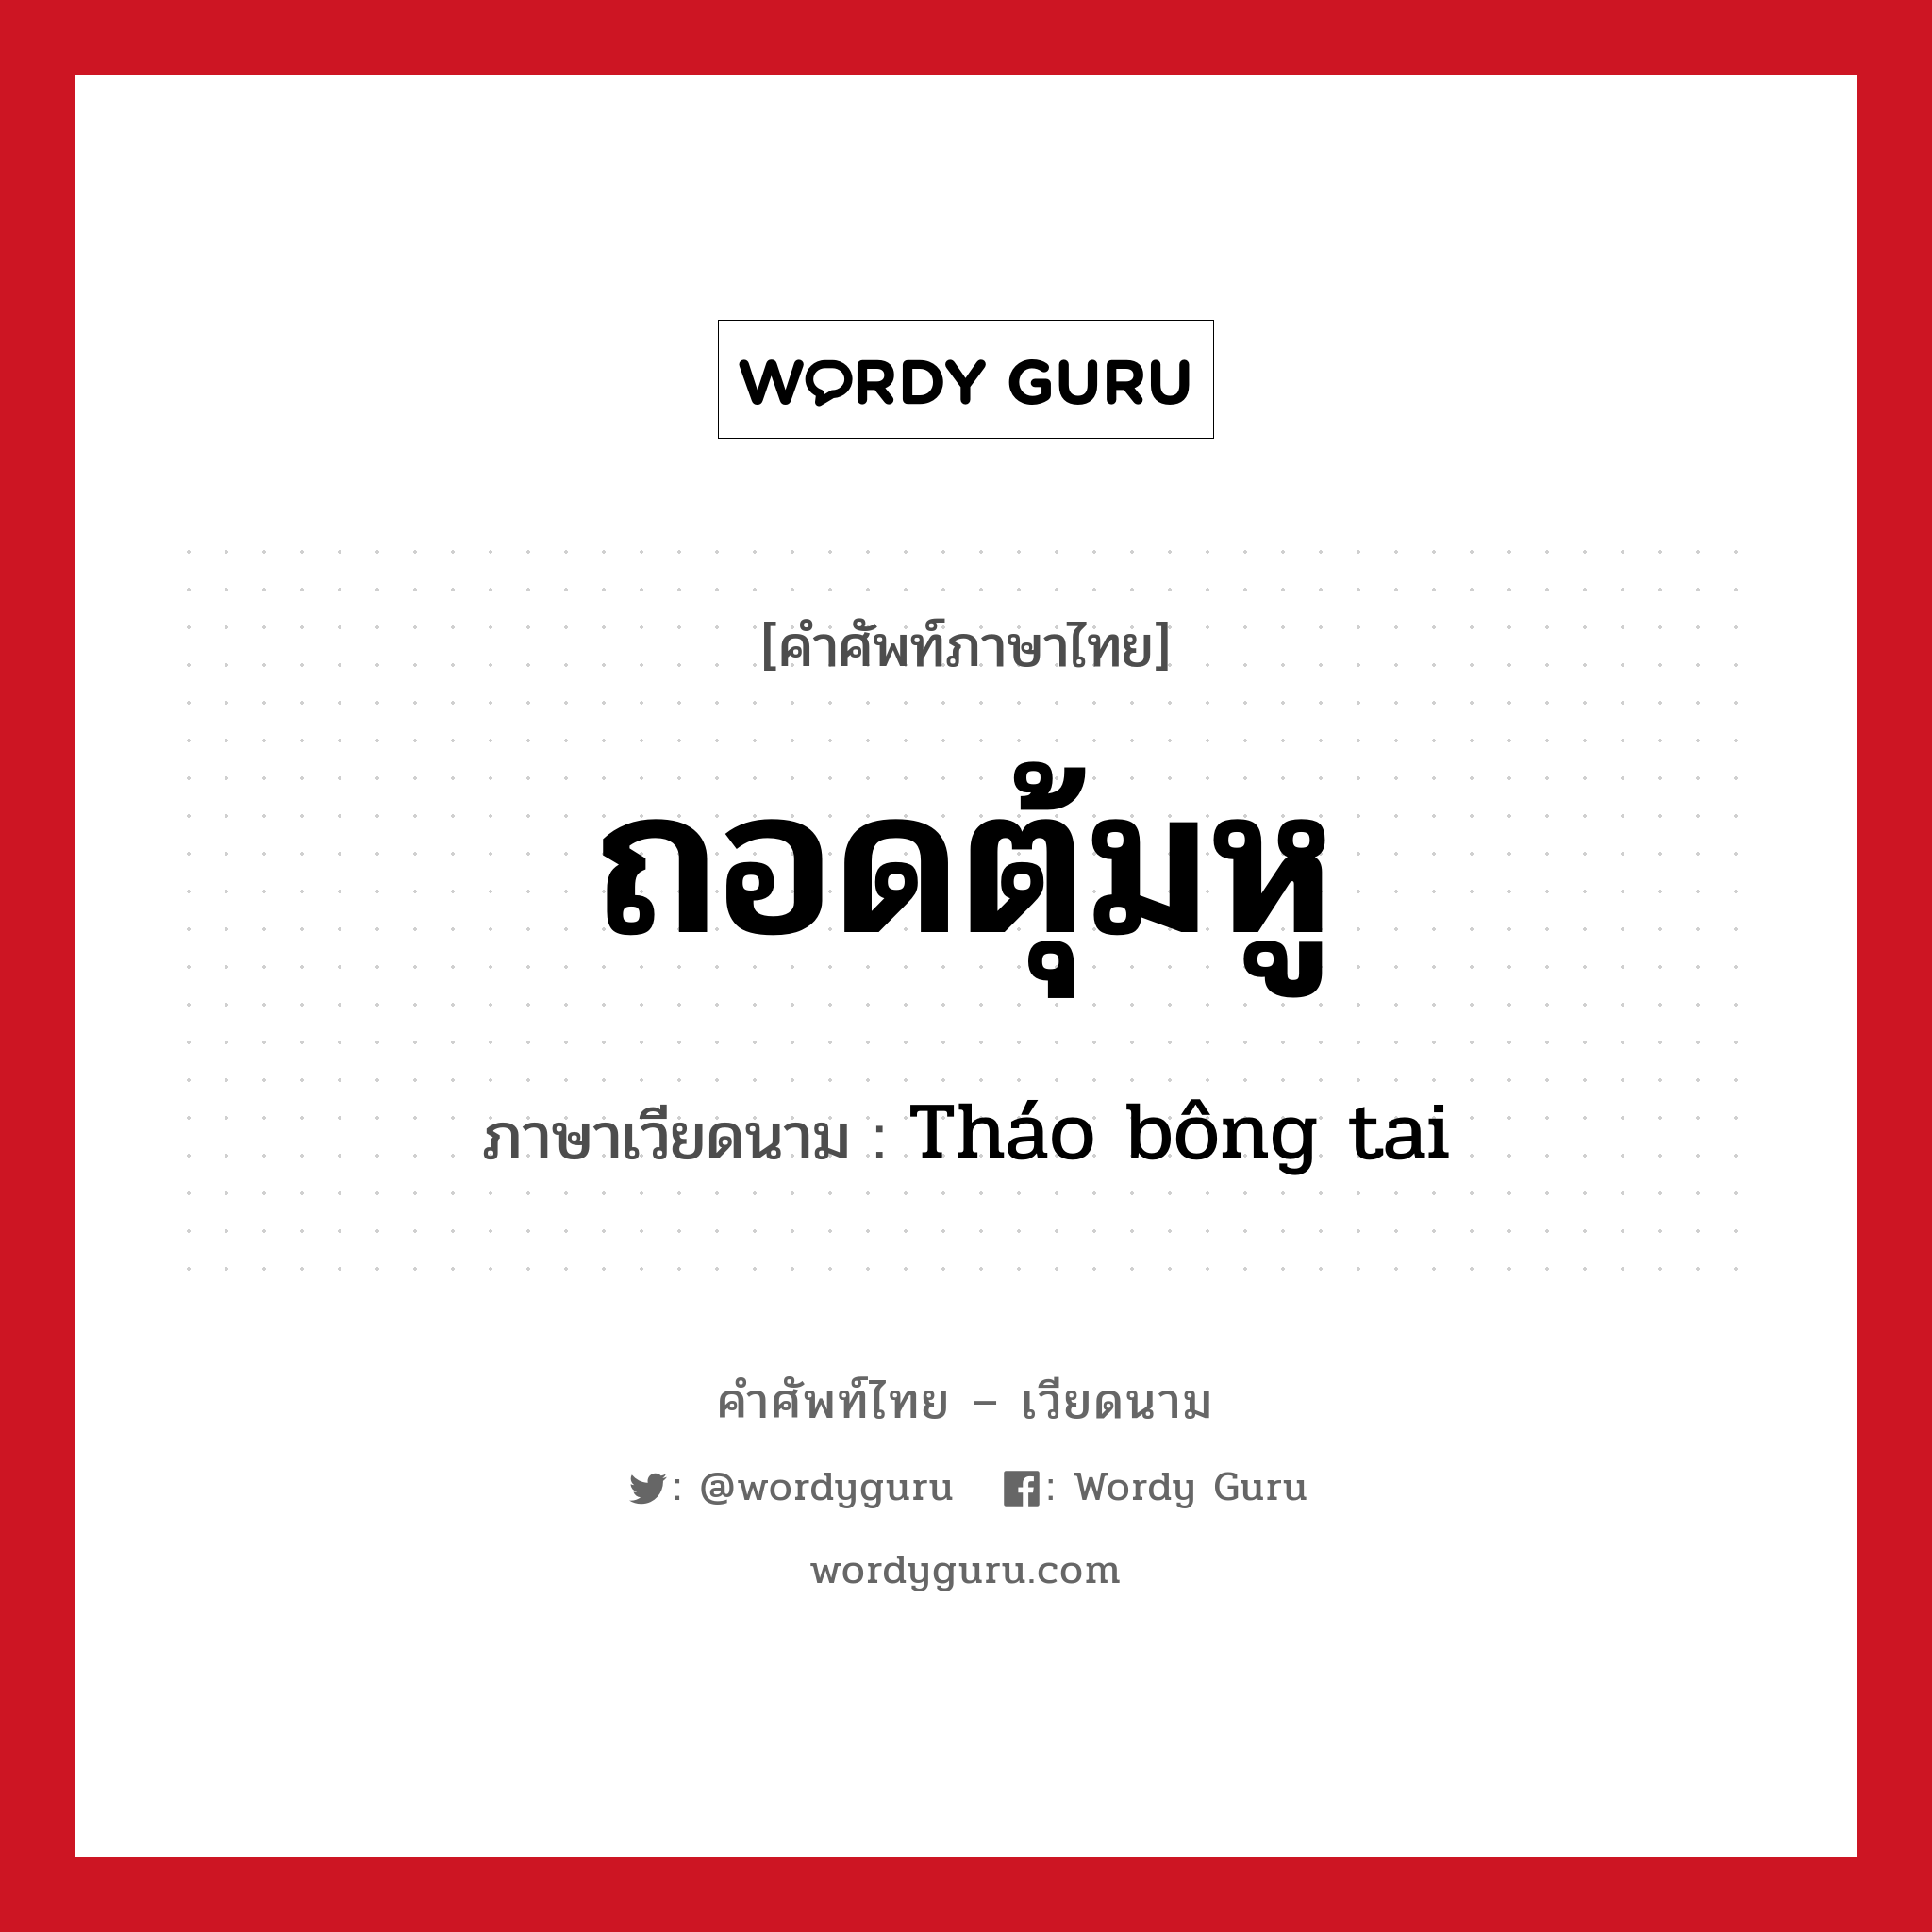 ถอดตุ้มหู ภาษาเวียดนามคืออะไร, คำศัพท์ภาษาไทย - เวียดนาม ถอดตุ้มหู ภาษาเวียดนาม Tháo bông tai หมวด เครื่องแต่งกาย หมวด เครื่องแต่งกาย